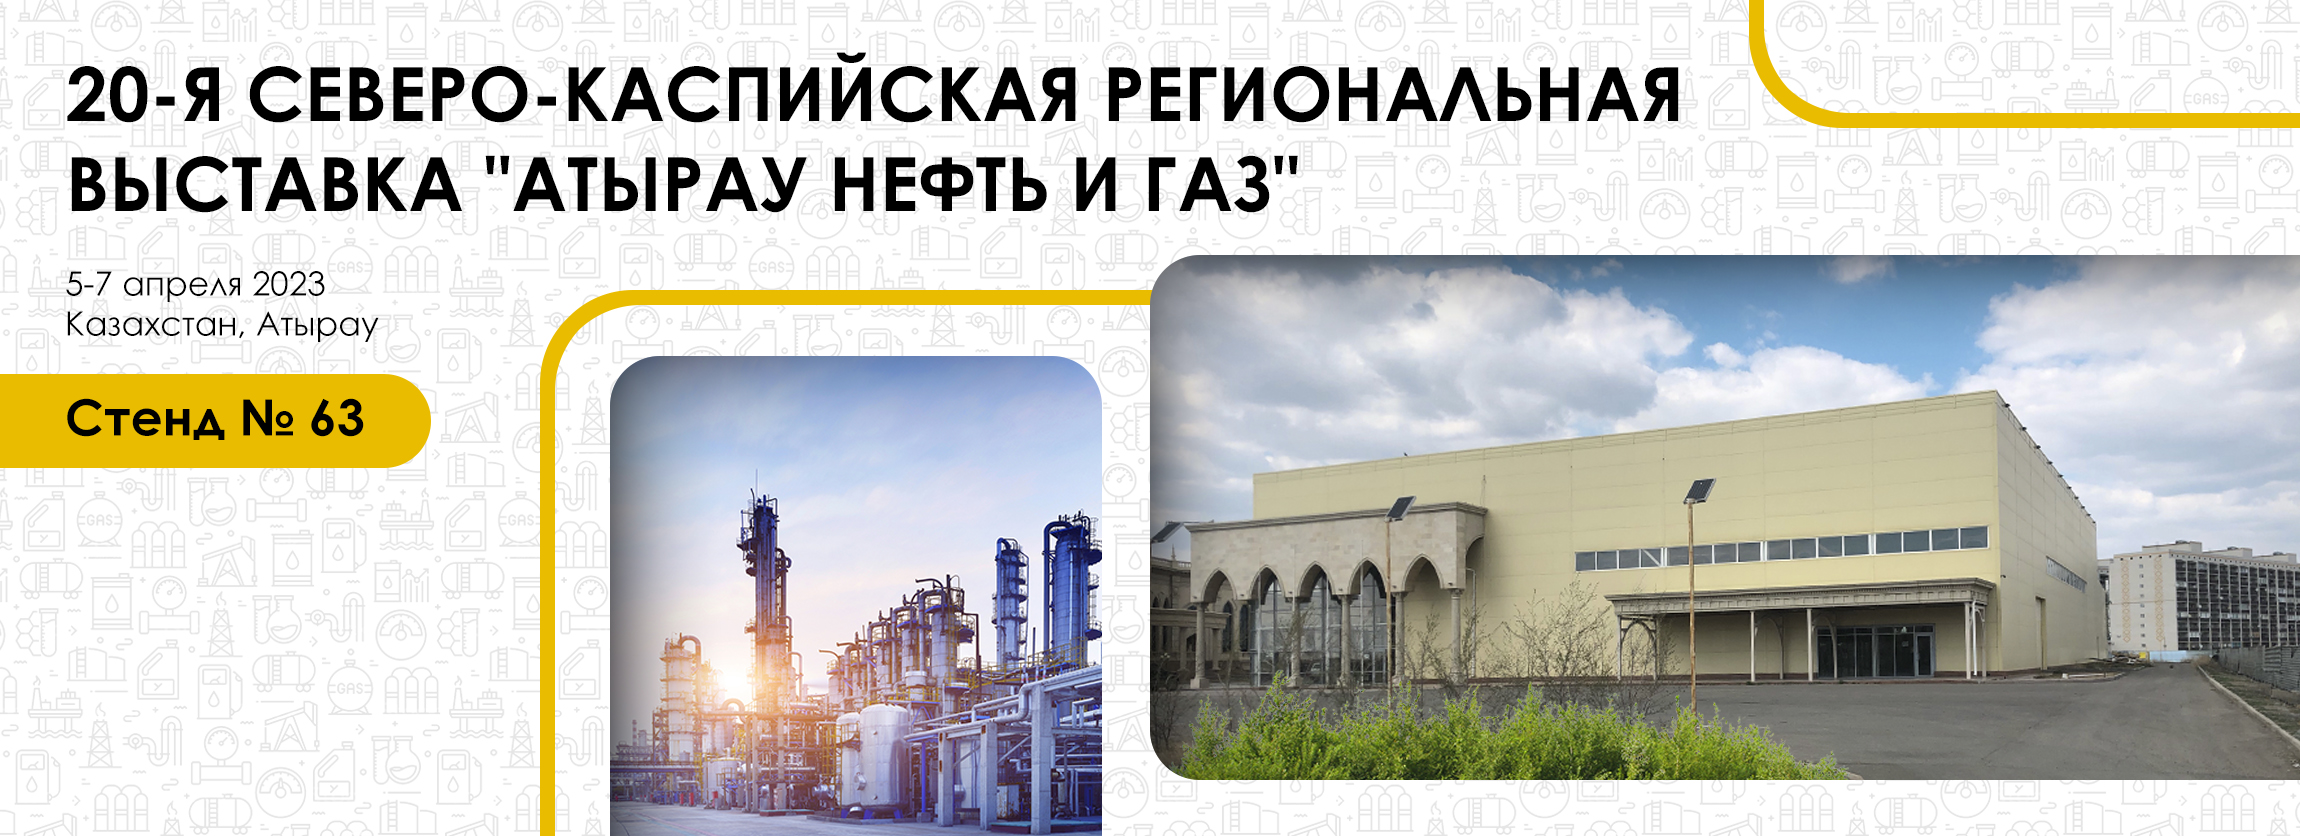  Выставка «Атырау нефть и газ», Казахстан, г. Атырау